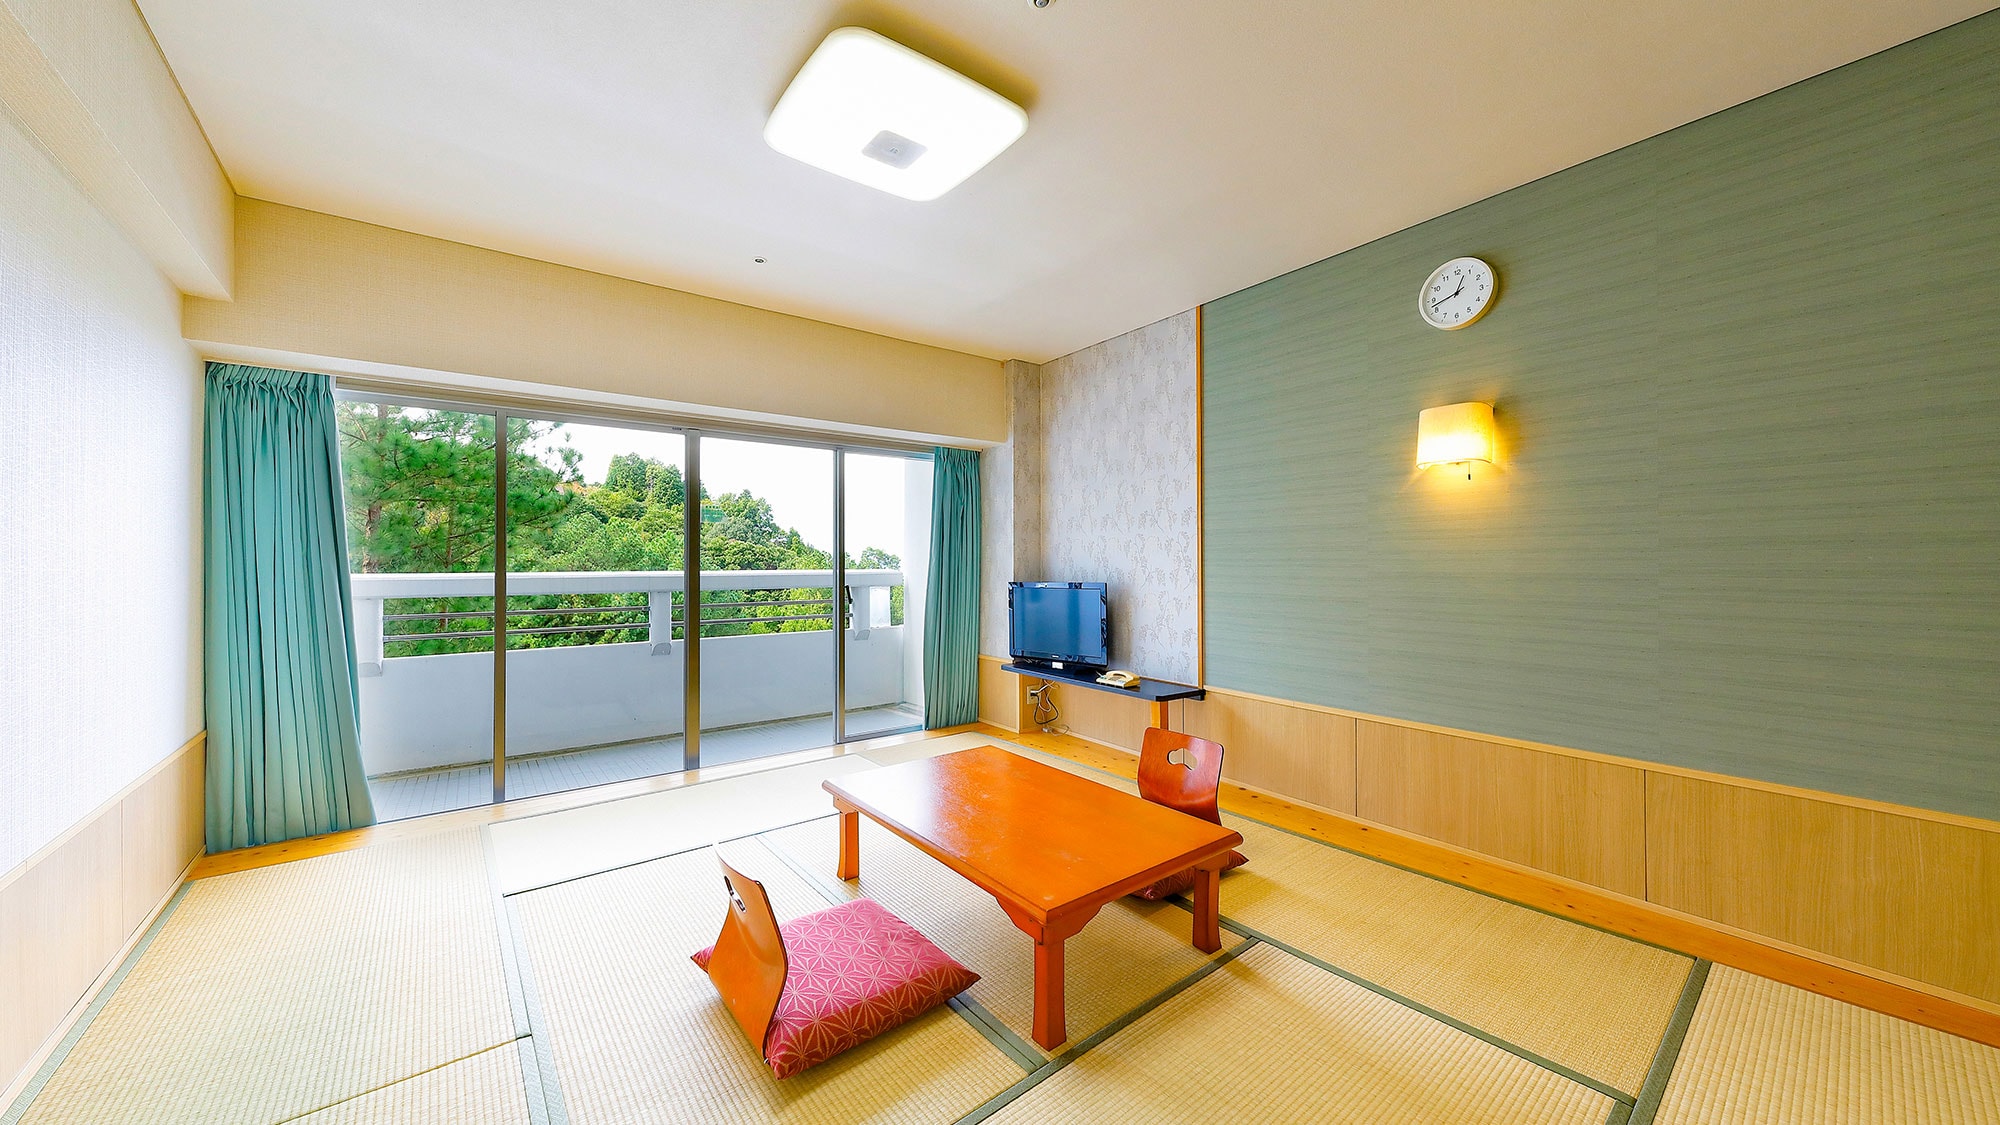 □ No smoking □ -Japanese-style room 10 tatami mats, 12 tatami mats